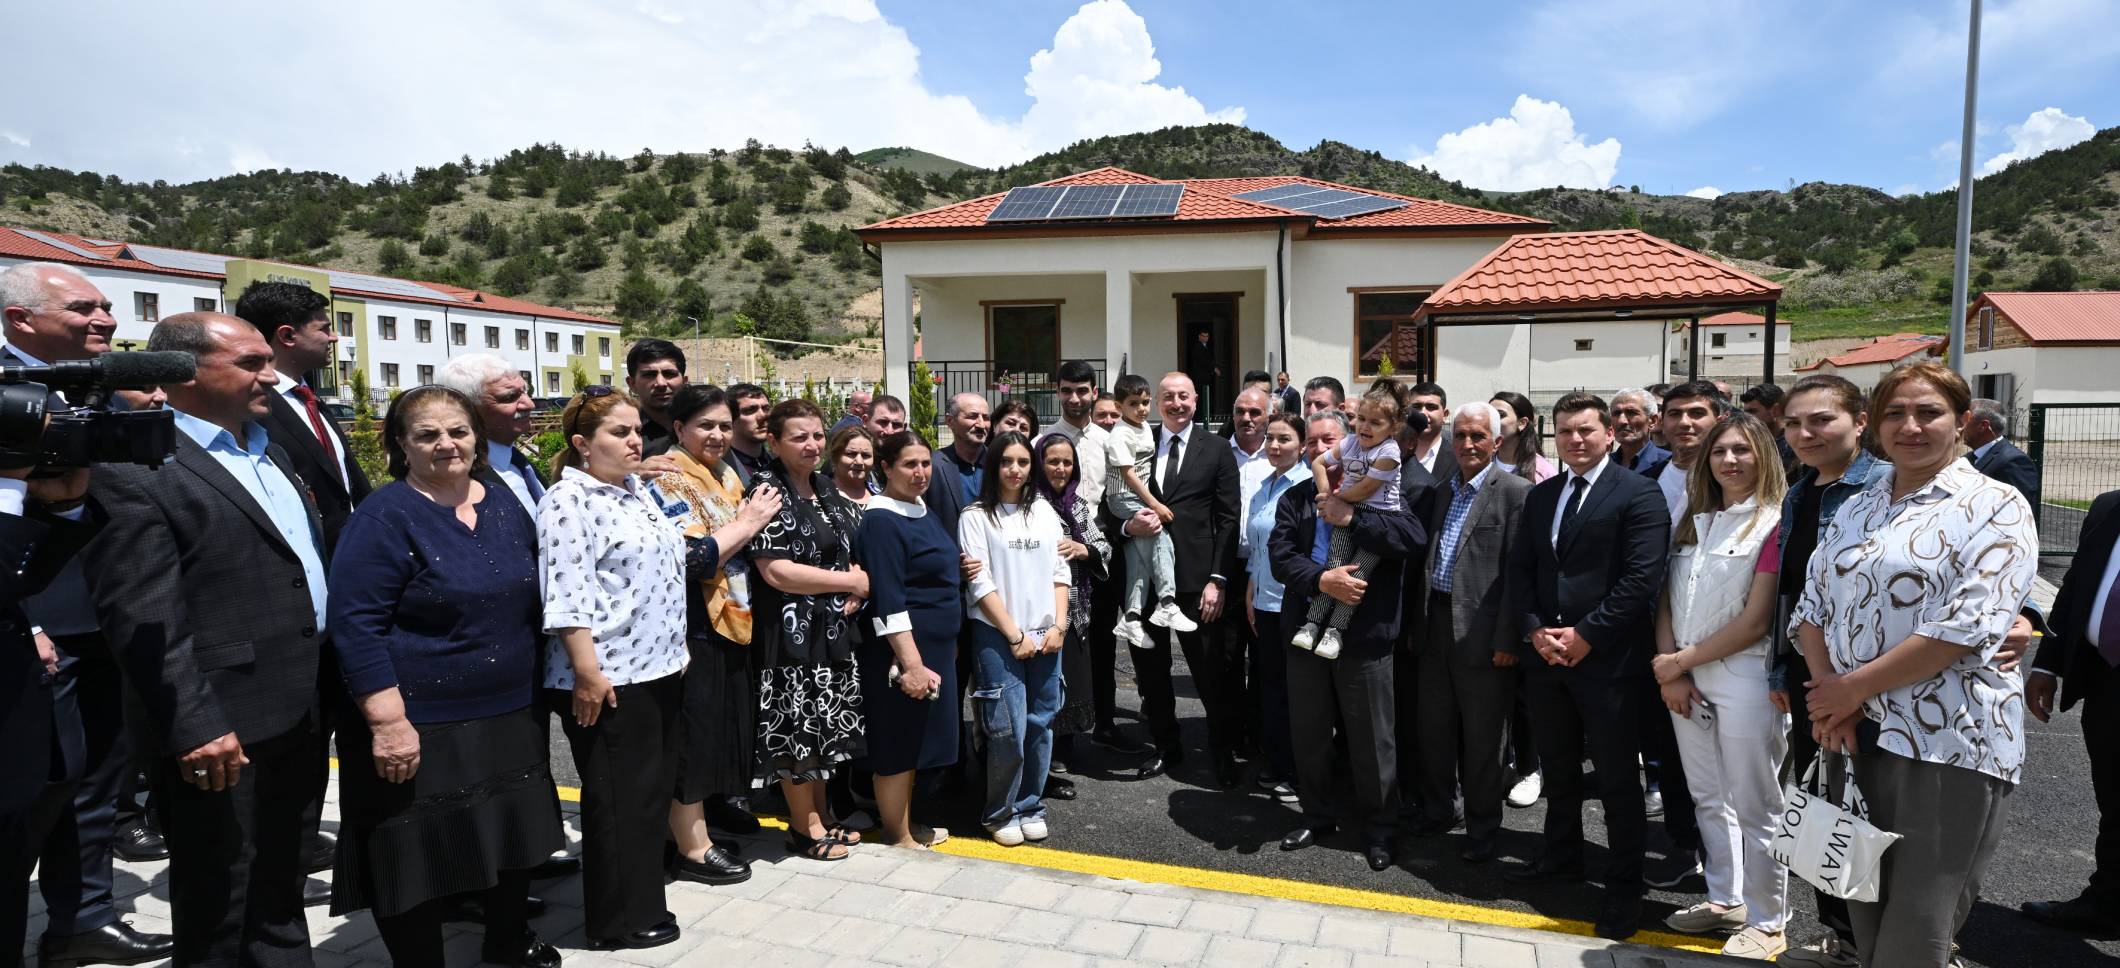 Ильхам Алиев встретился с жителями, переселившимися в село Сус Лачинского района, принял участие в открытии малых гидроэлектростанций